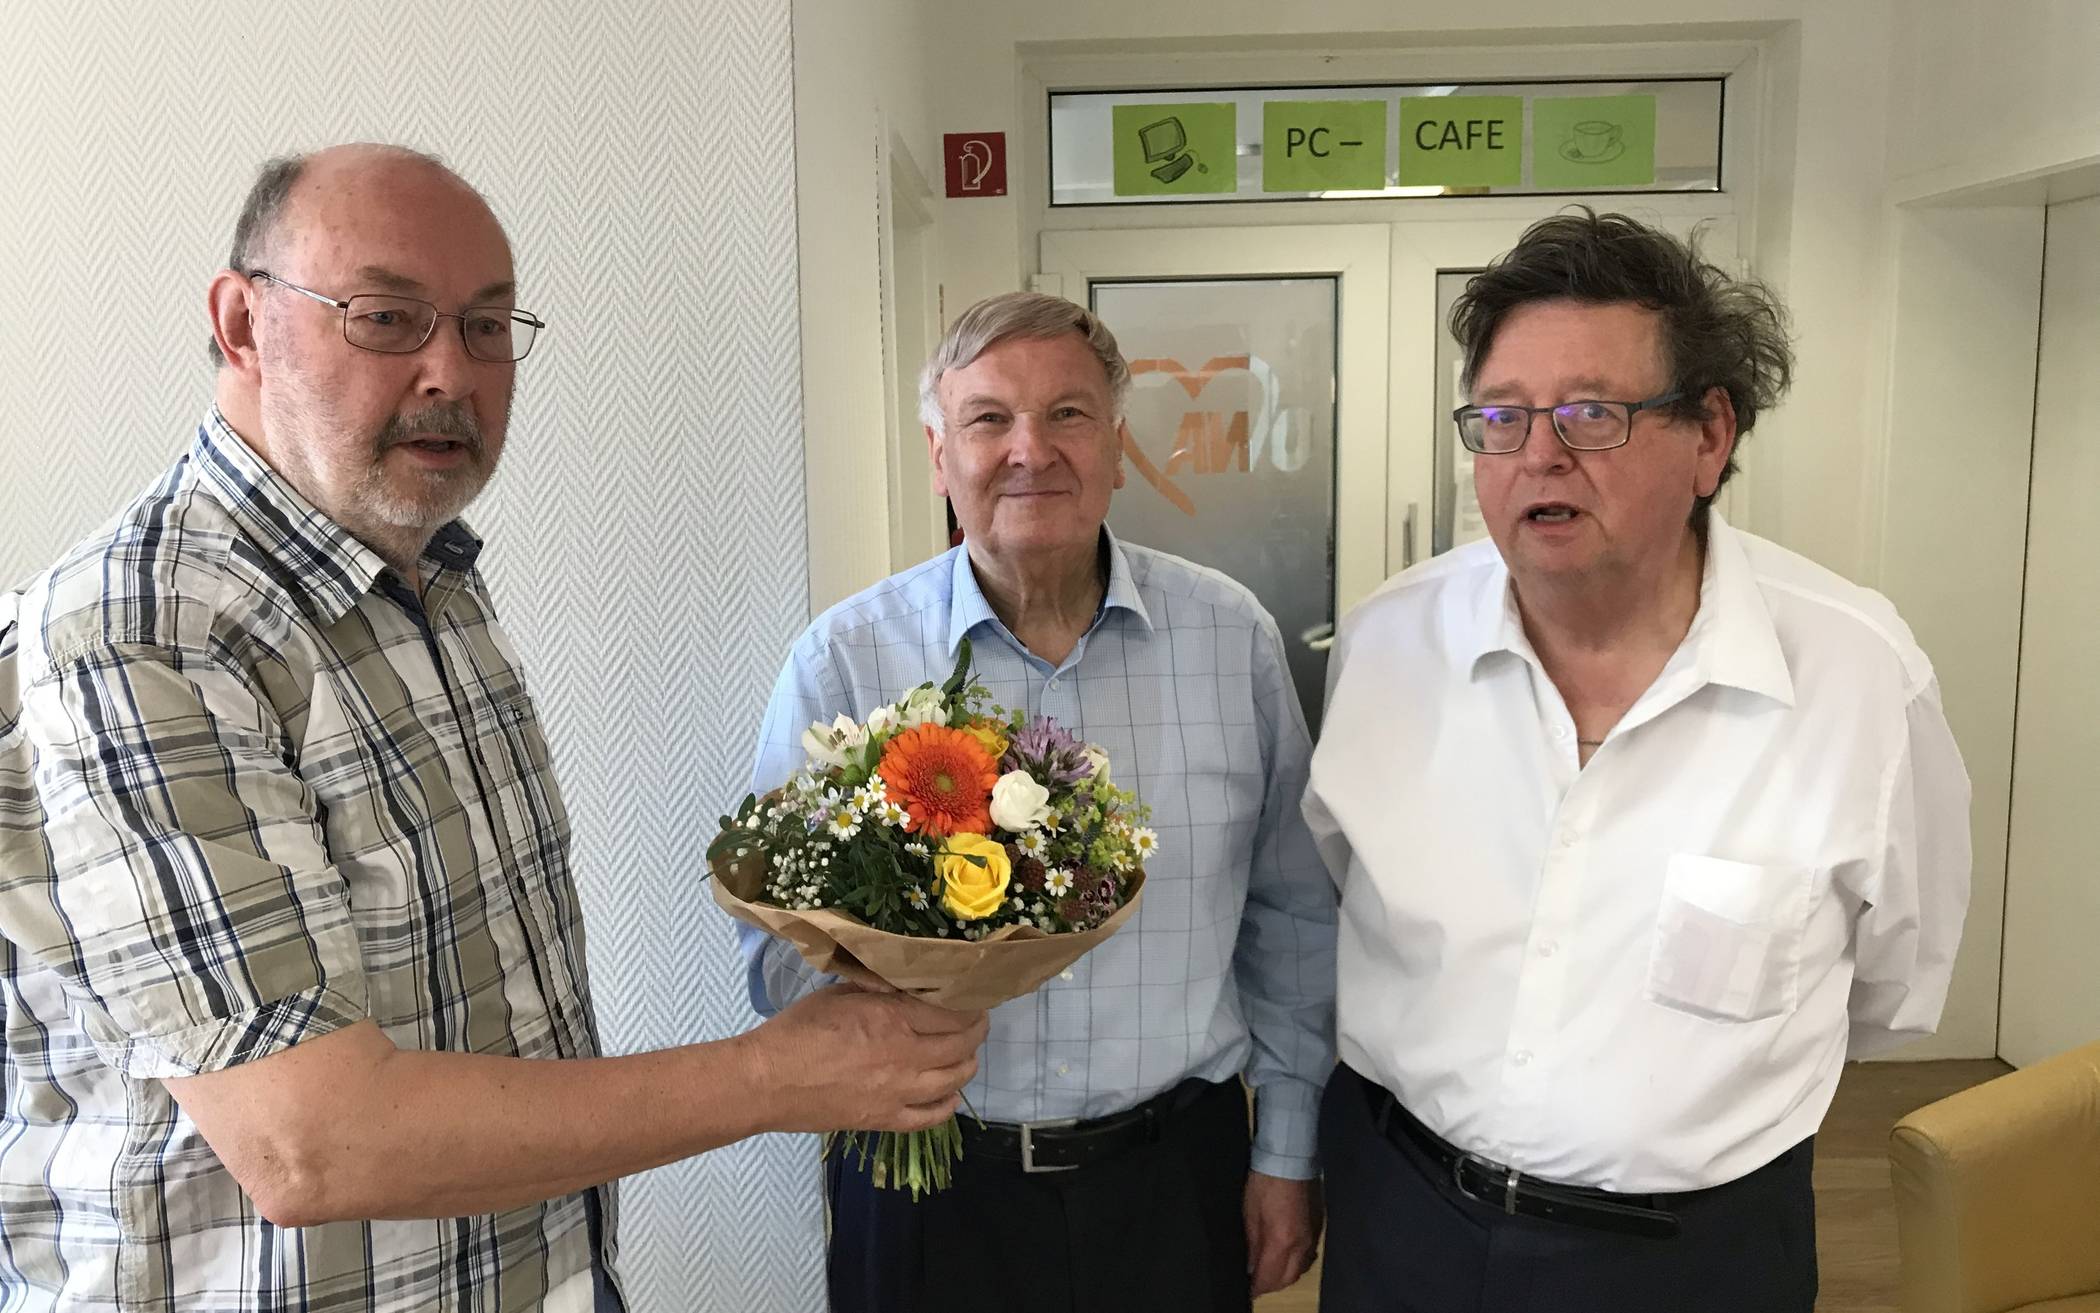  Herbert Breitrück (l.) überreicht dem scheidenden Vorsitzenden Wolfgang Friedrich (Mitte) einen Blumenstrauß. Rechts Hans-Joachim Adelhöfer, der nach fünfjähriger Vorstandsarbeit ausscheidet.  